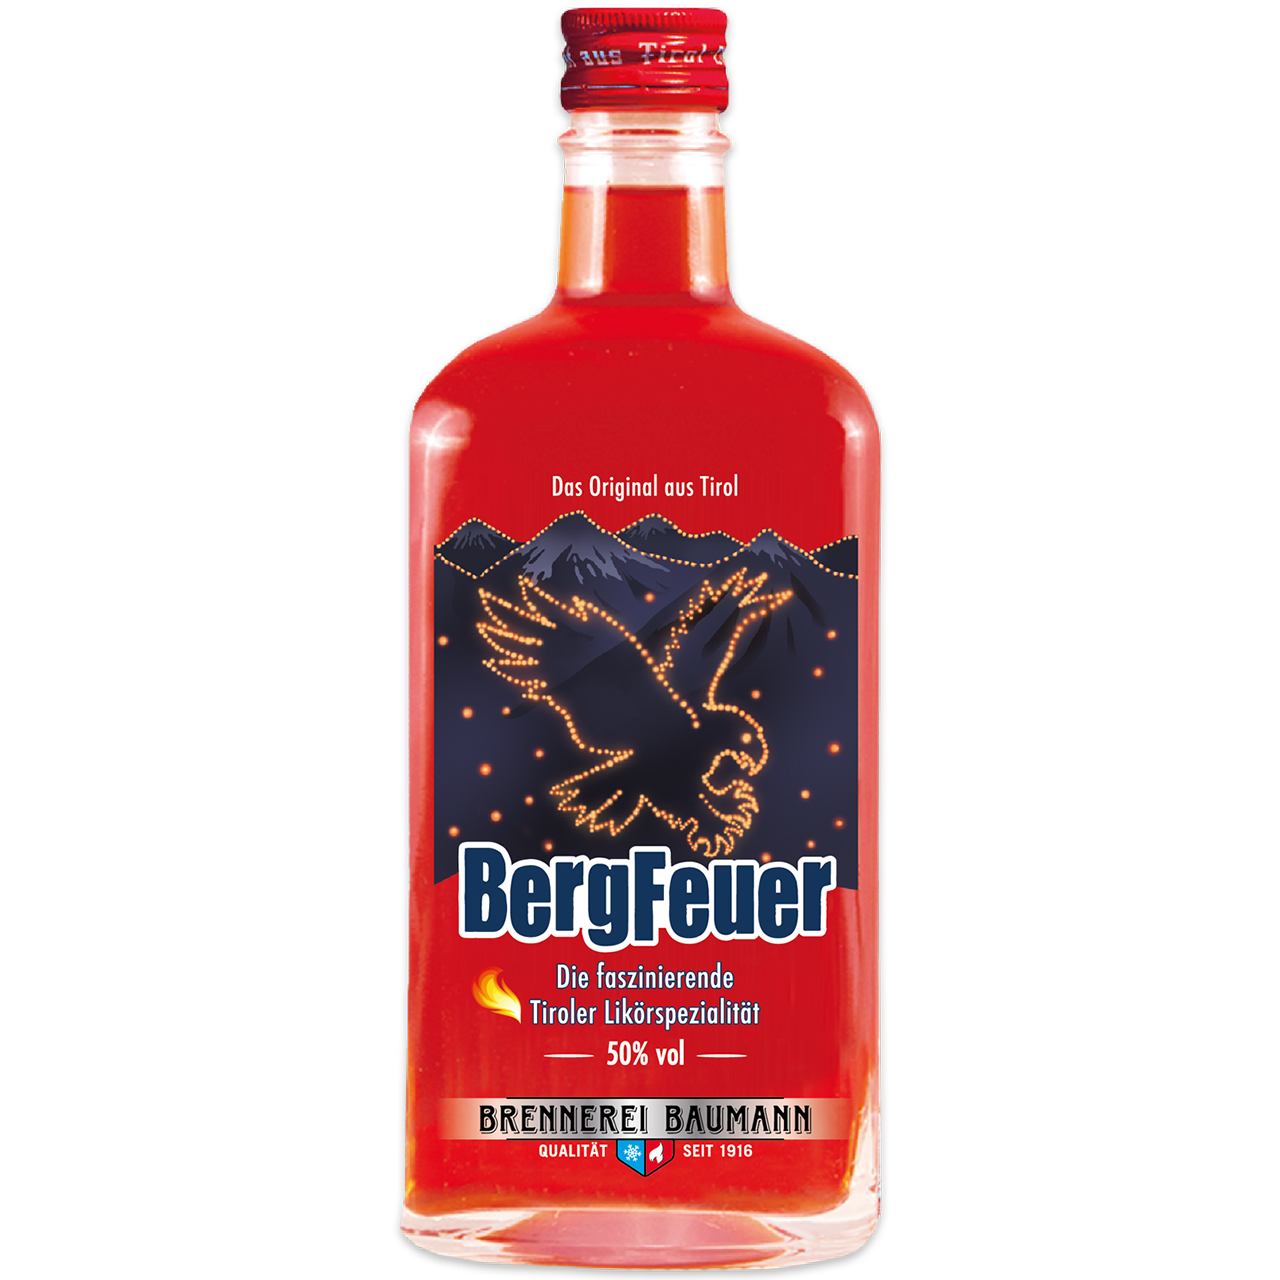 Mountain Blaze Liqueur in 500ml bottle from Brennerei Baumann